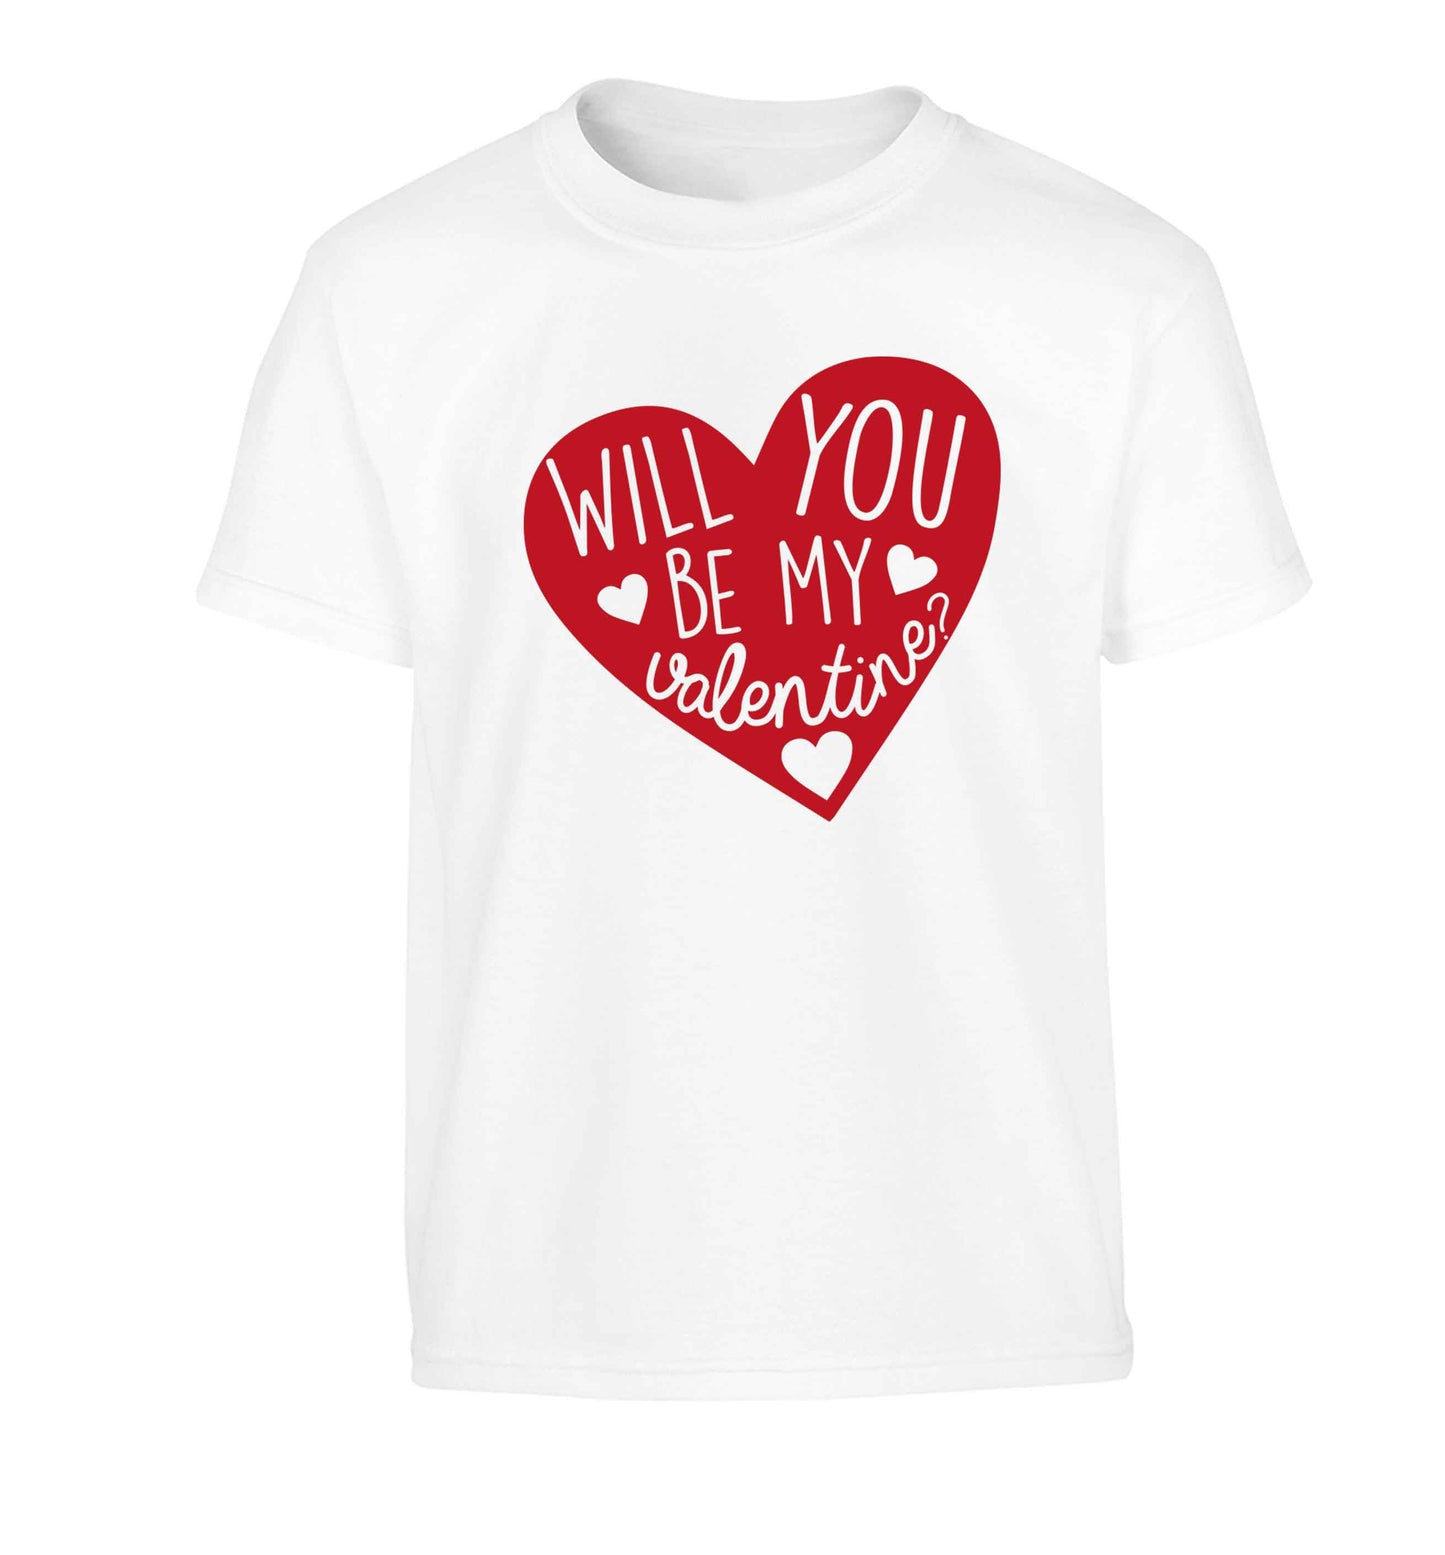 Will you be my valentine? Children's white Tshirt 12-13 Years